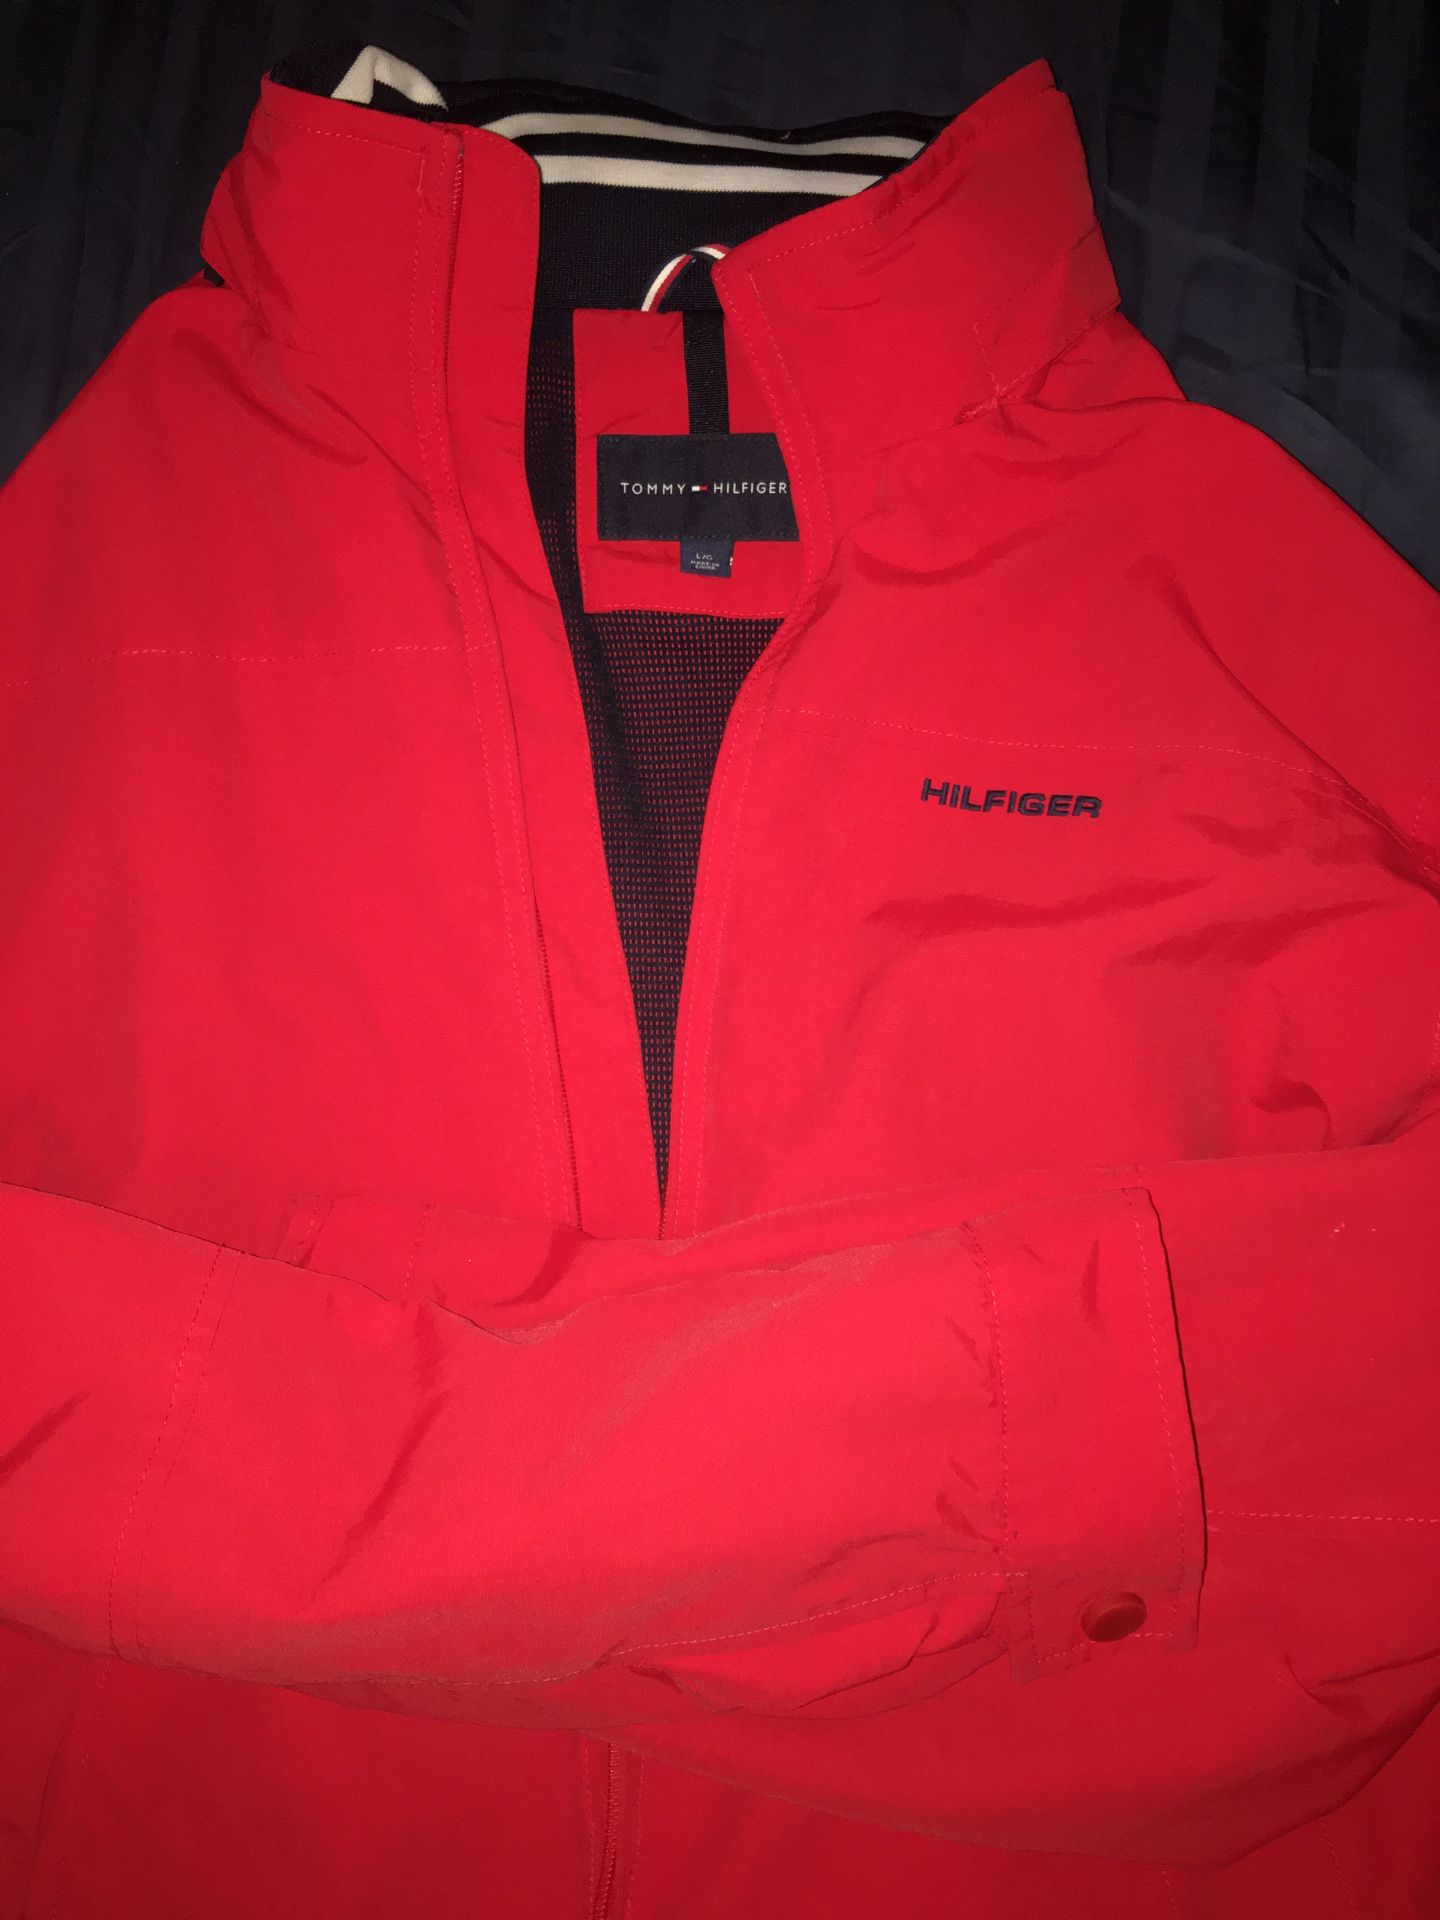 Red Tommy Hilfiger jacket